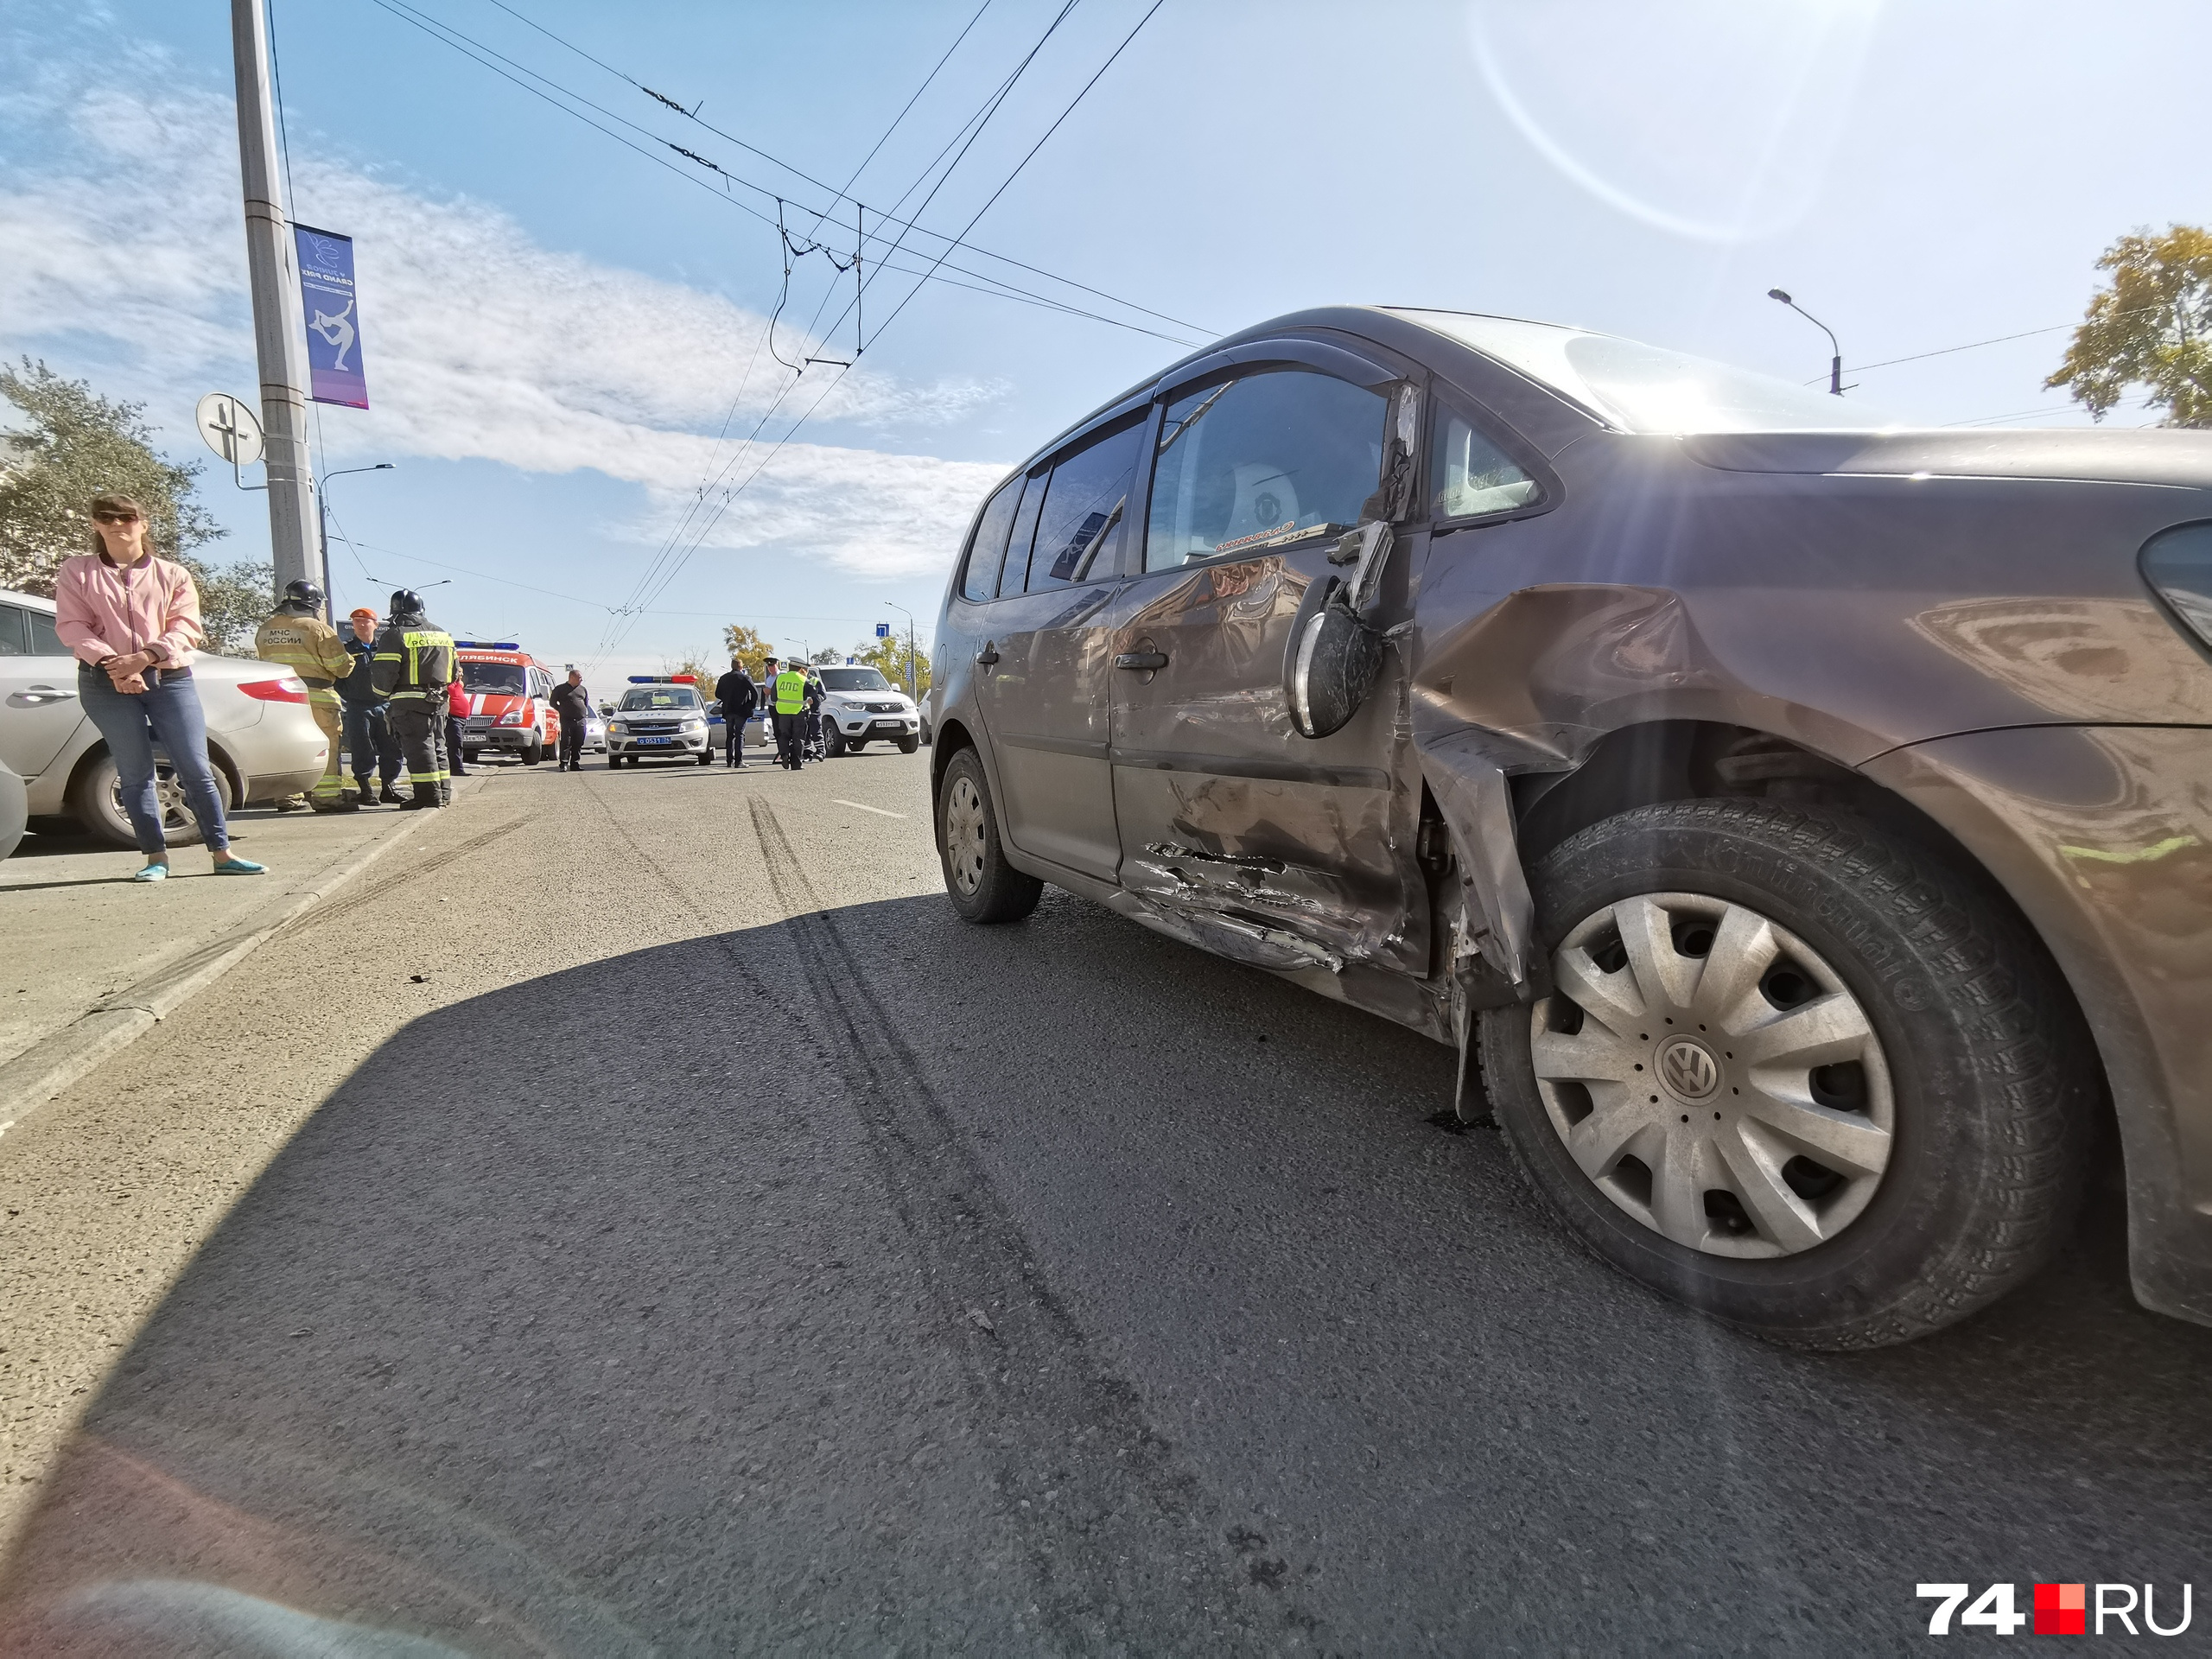 Второй участник аварии — Volkswagen Touran